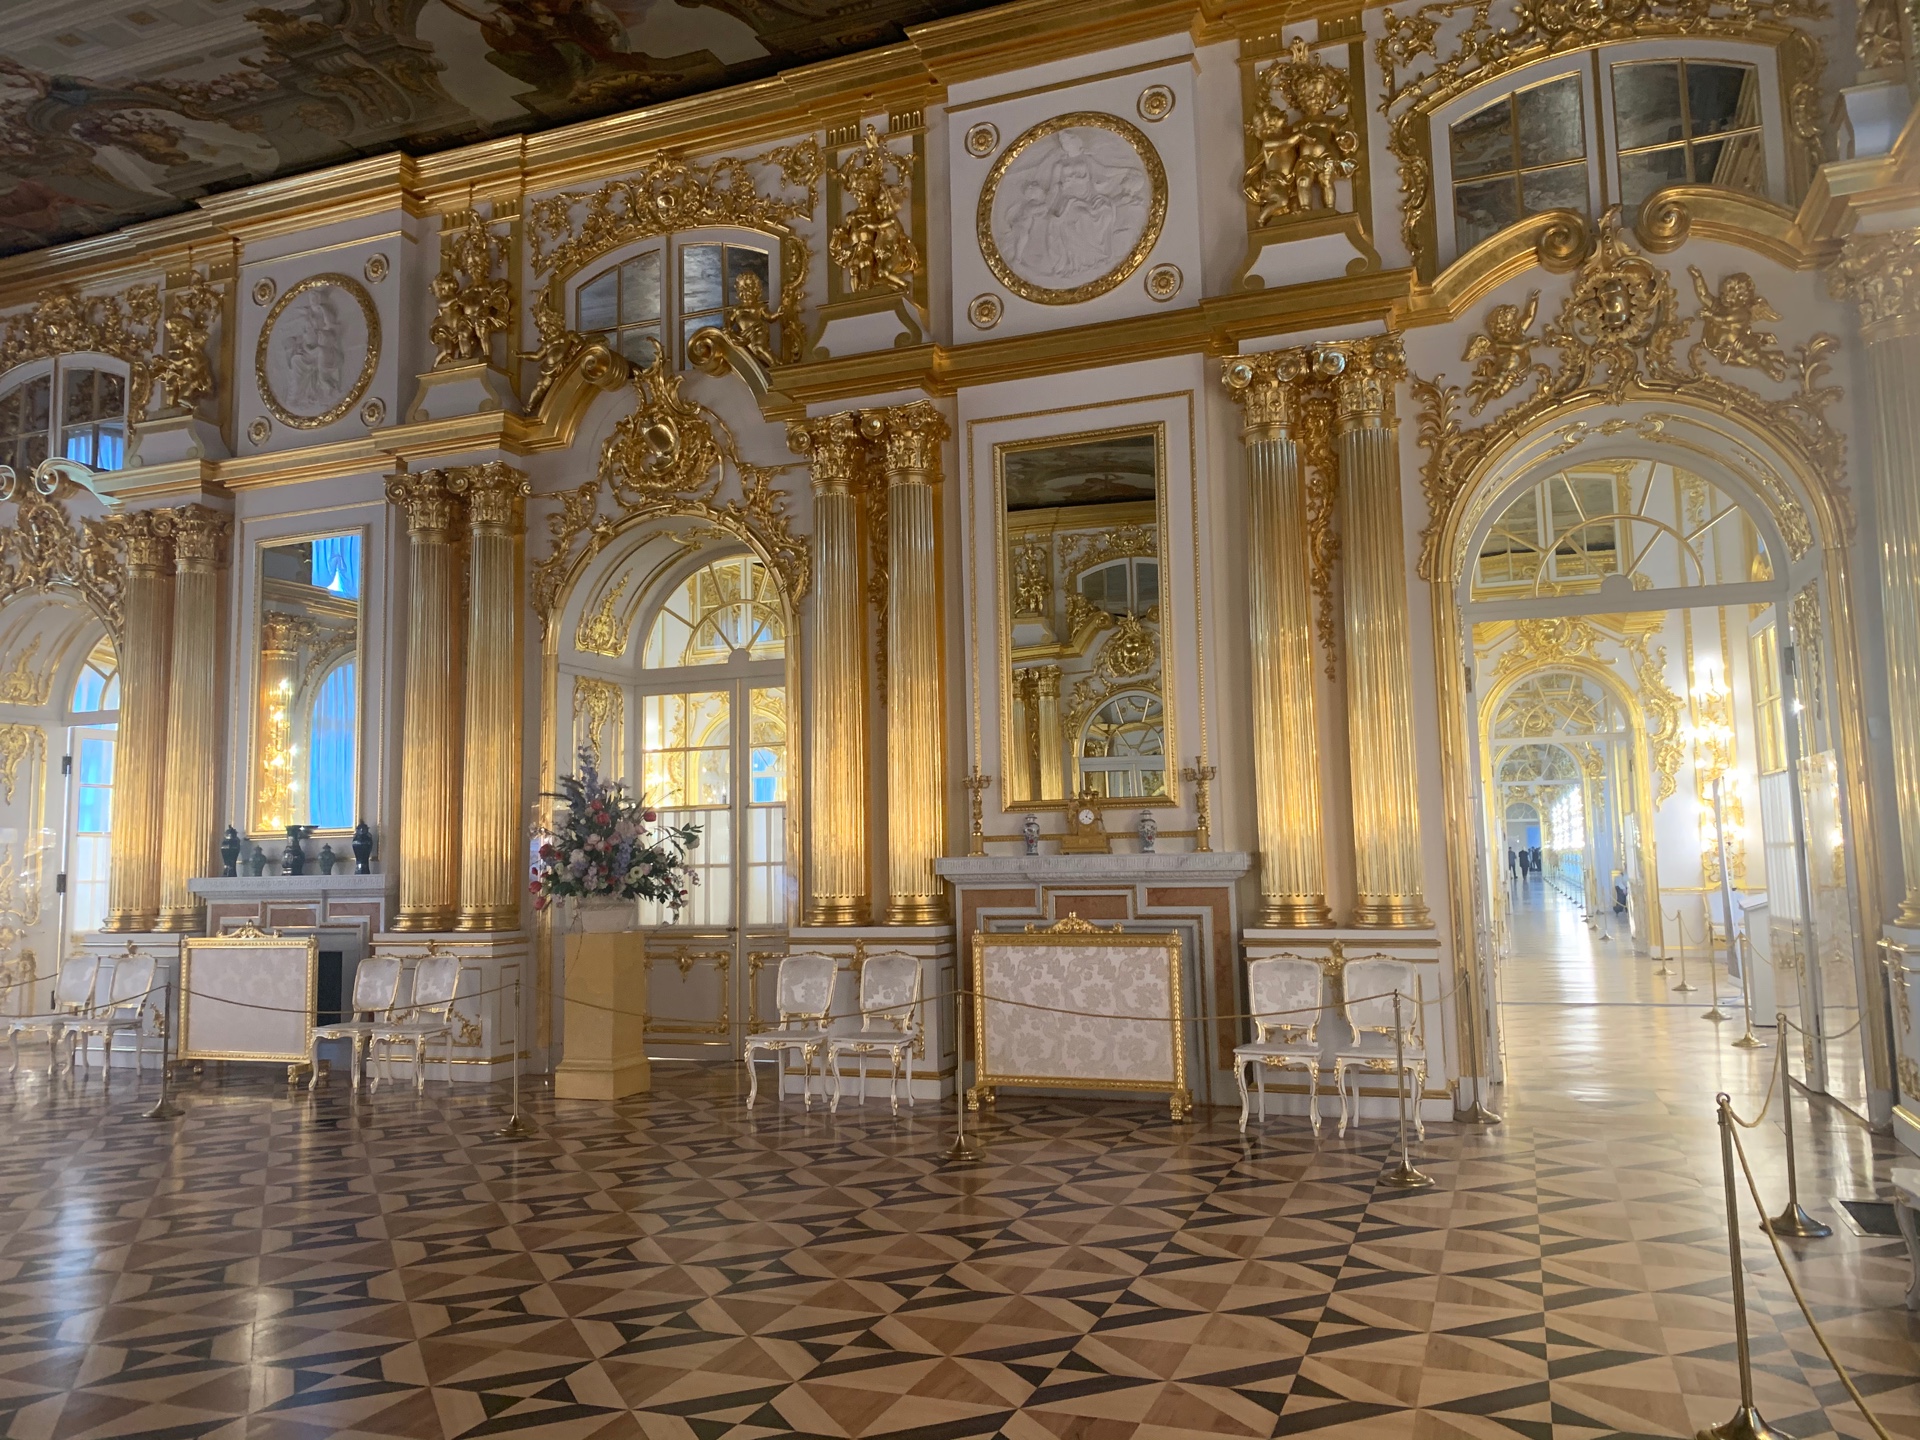 Как увидеть Янтарную комнату в Санкт-Петербурге?